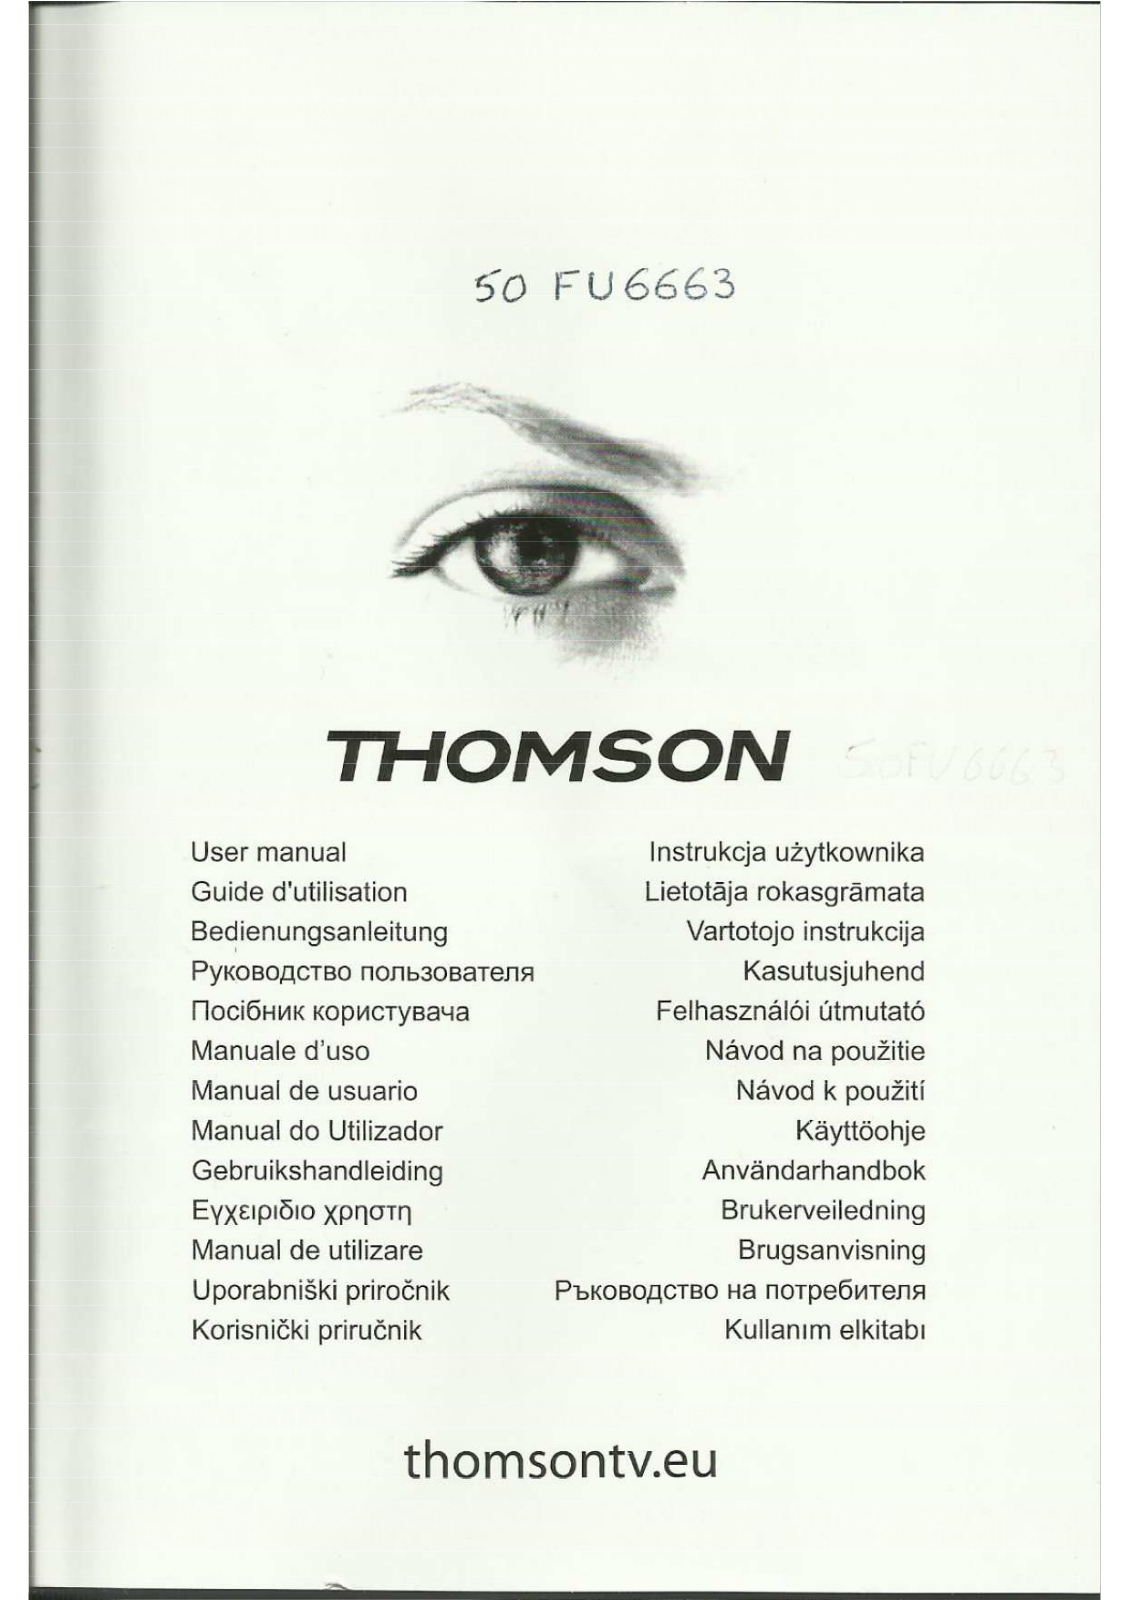 THOMSON 50FU6663 User Manual